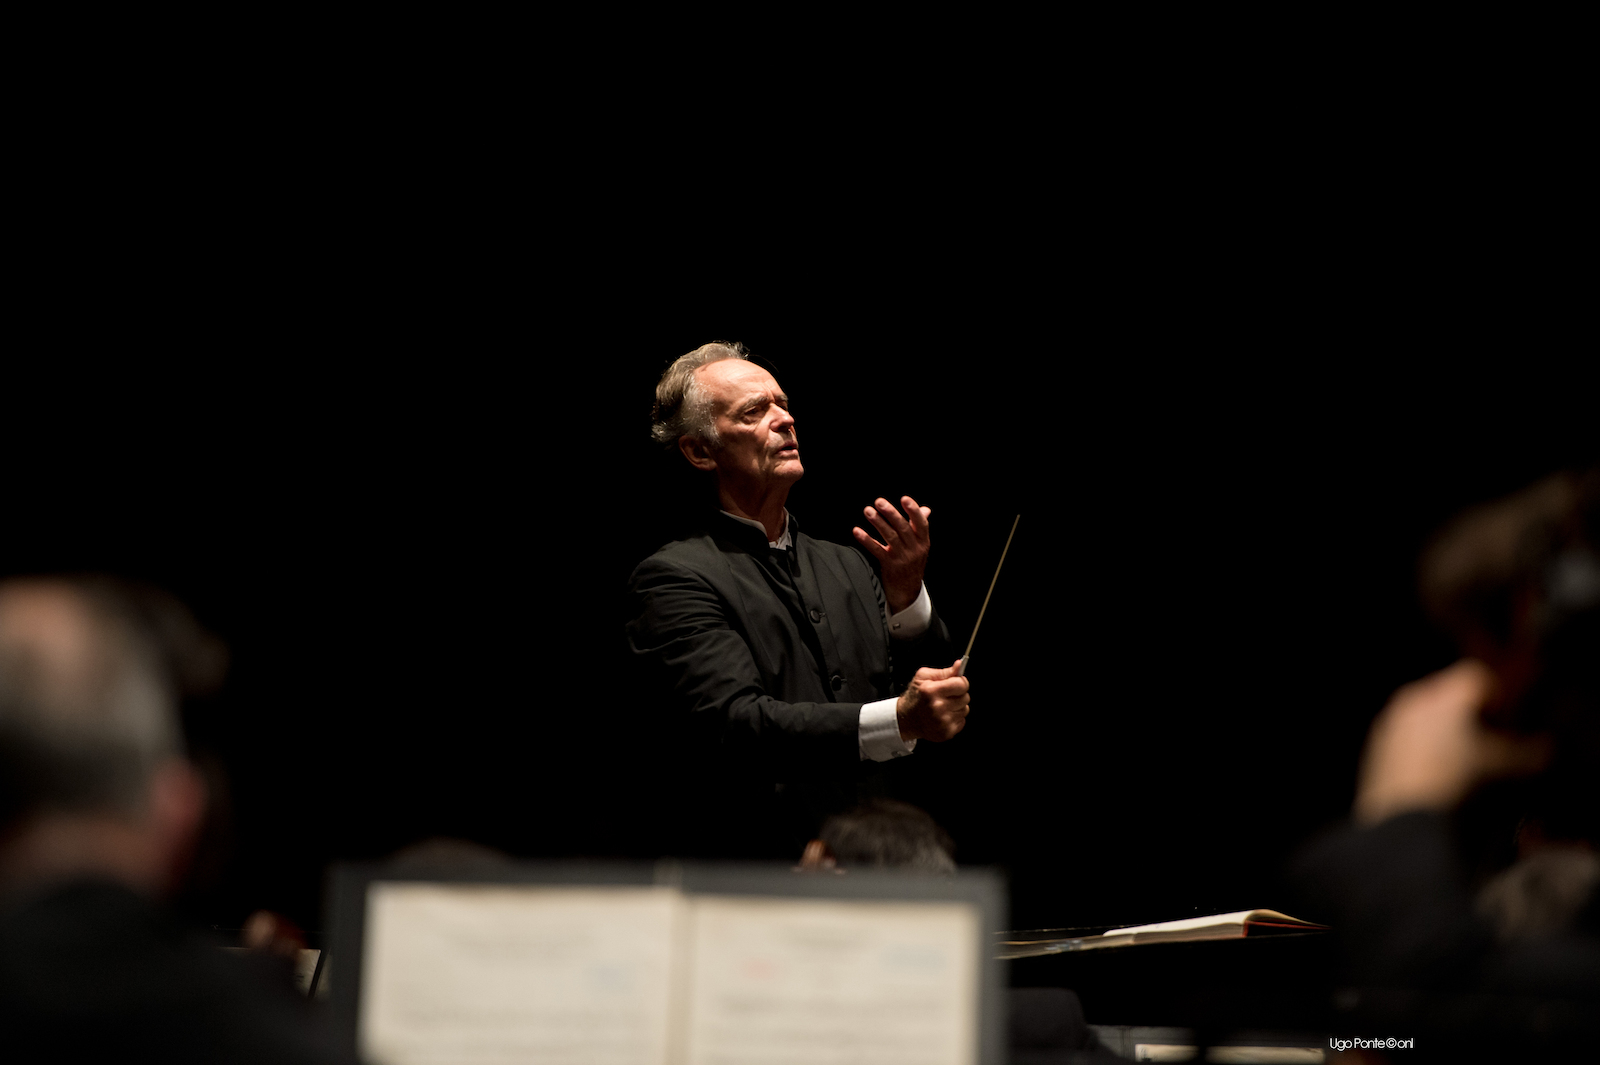 Le chef d'orchestre Jean-Claude Casadesus en action.